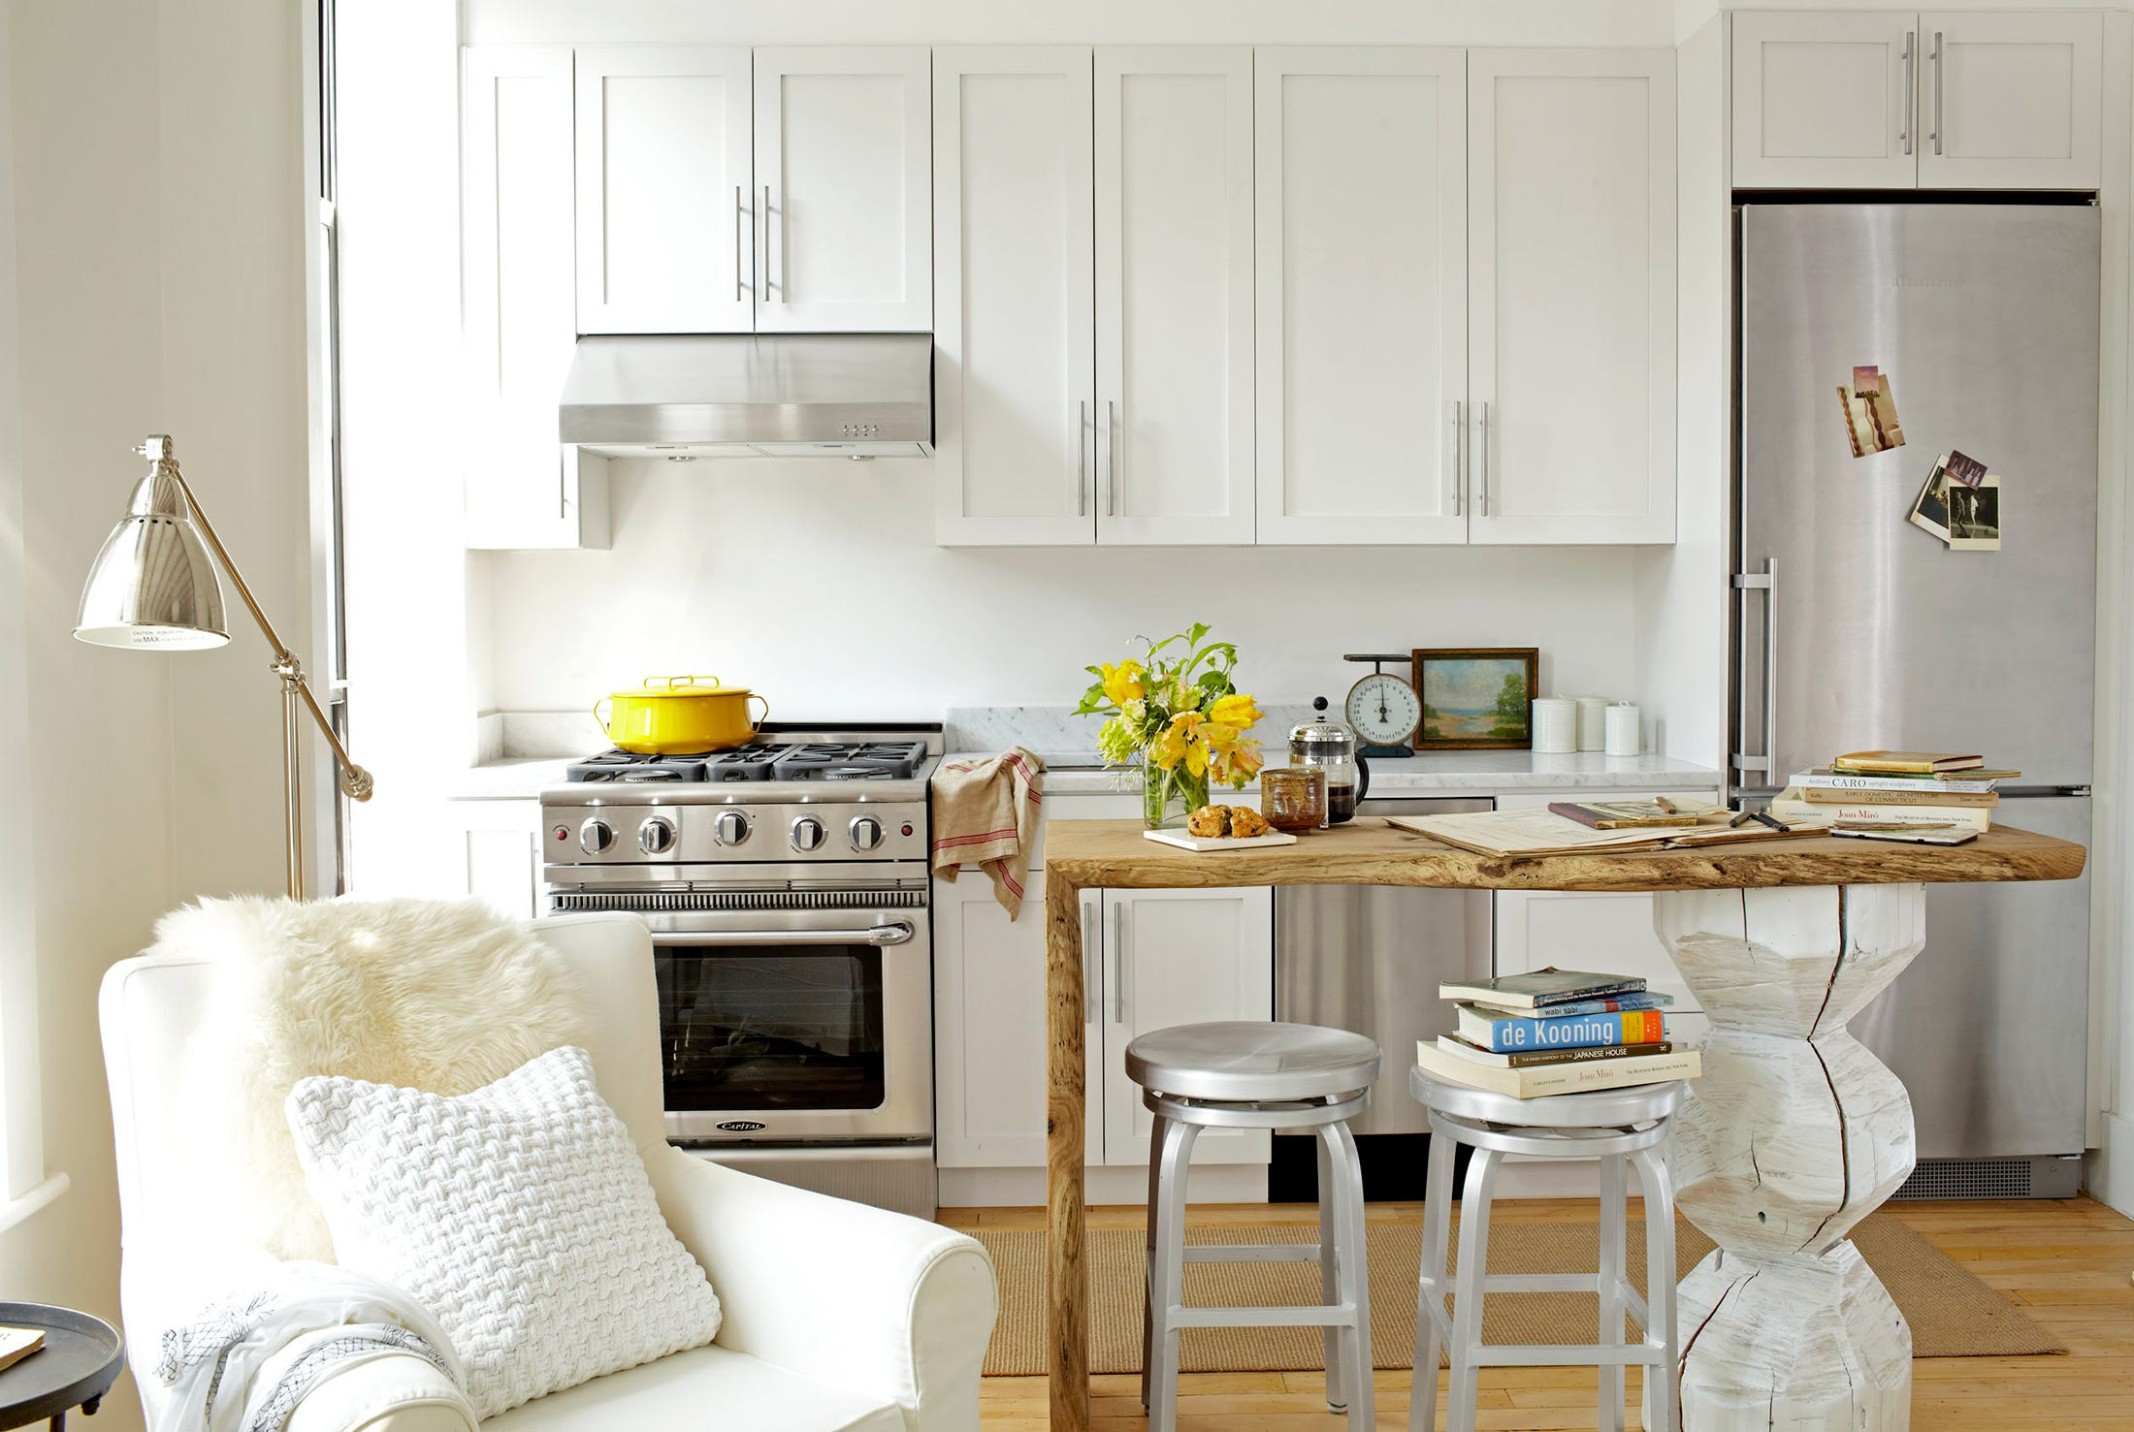 8 Best Small Kitchen Design Ideas - Decor Solutions for Small  - kitchen renovation ideas small spaces